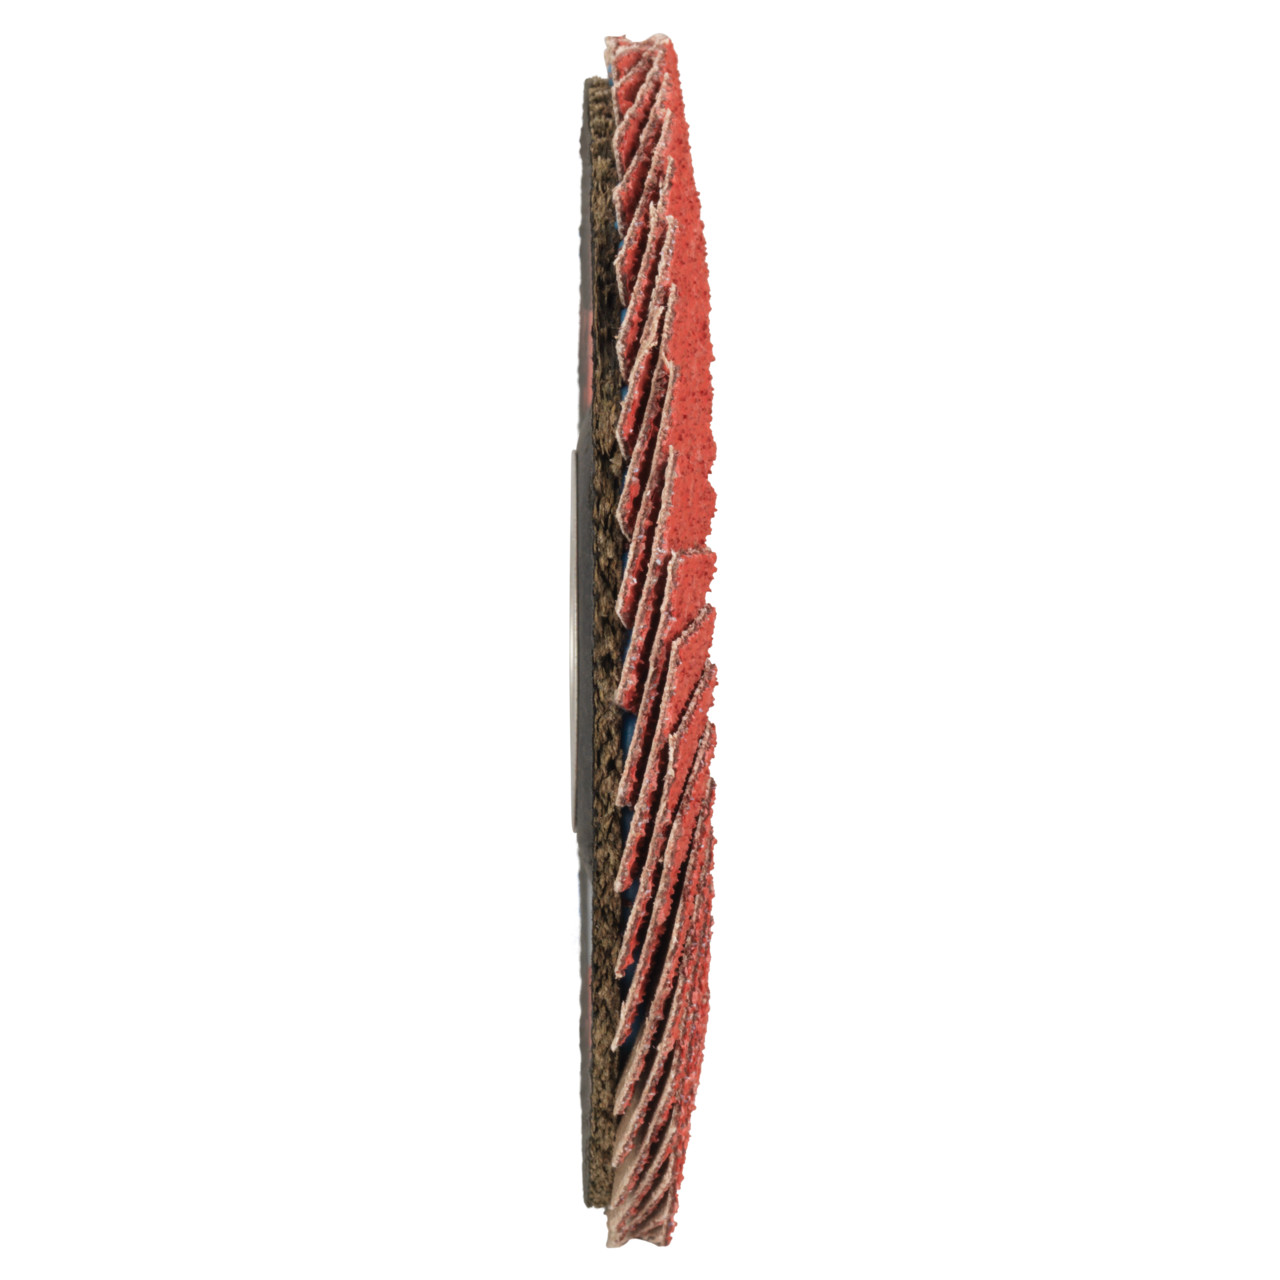 Tyrolit Arandela de seguridad dentada DxH 115x22,23 CERÁMICA para acero inoxidable, P80, forma: 28A - versión recta (versión con cuerpo de soporte de fibra de vidrio), Art. 34166687